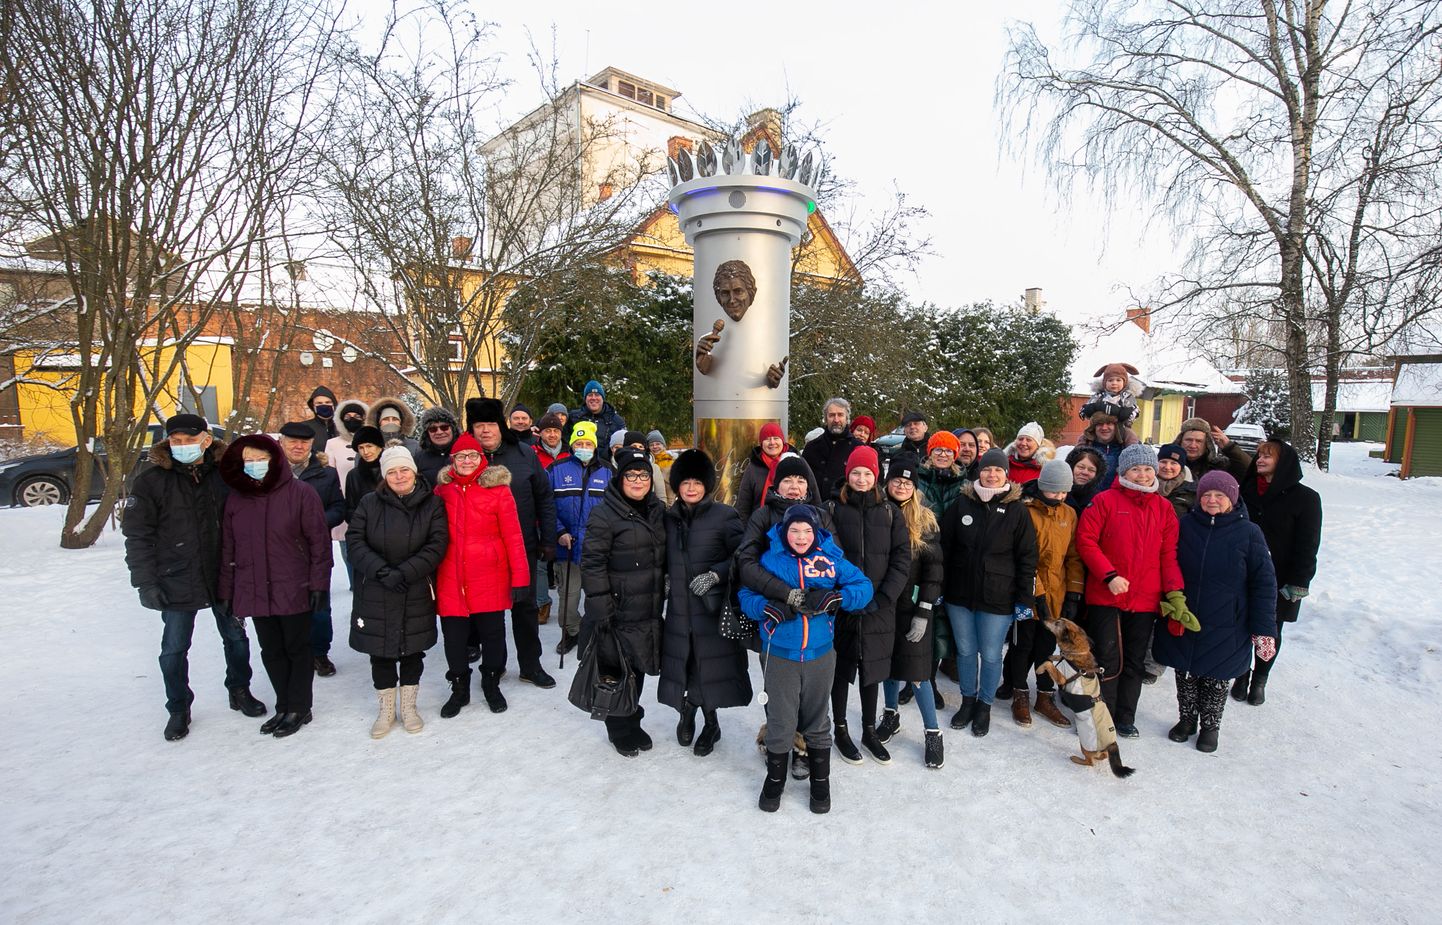 Posti tänava pargis püsti pandud Jaak Joala monument meelitab sinna uudistajaid üle Eesti. Laupäeva pärastlõunal oli sinna sadakond uudistajat.